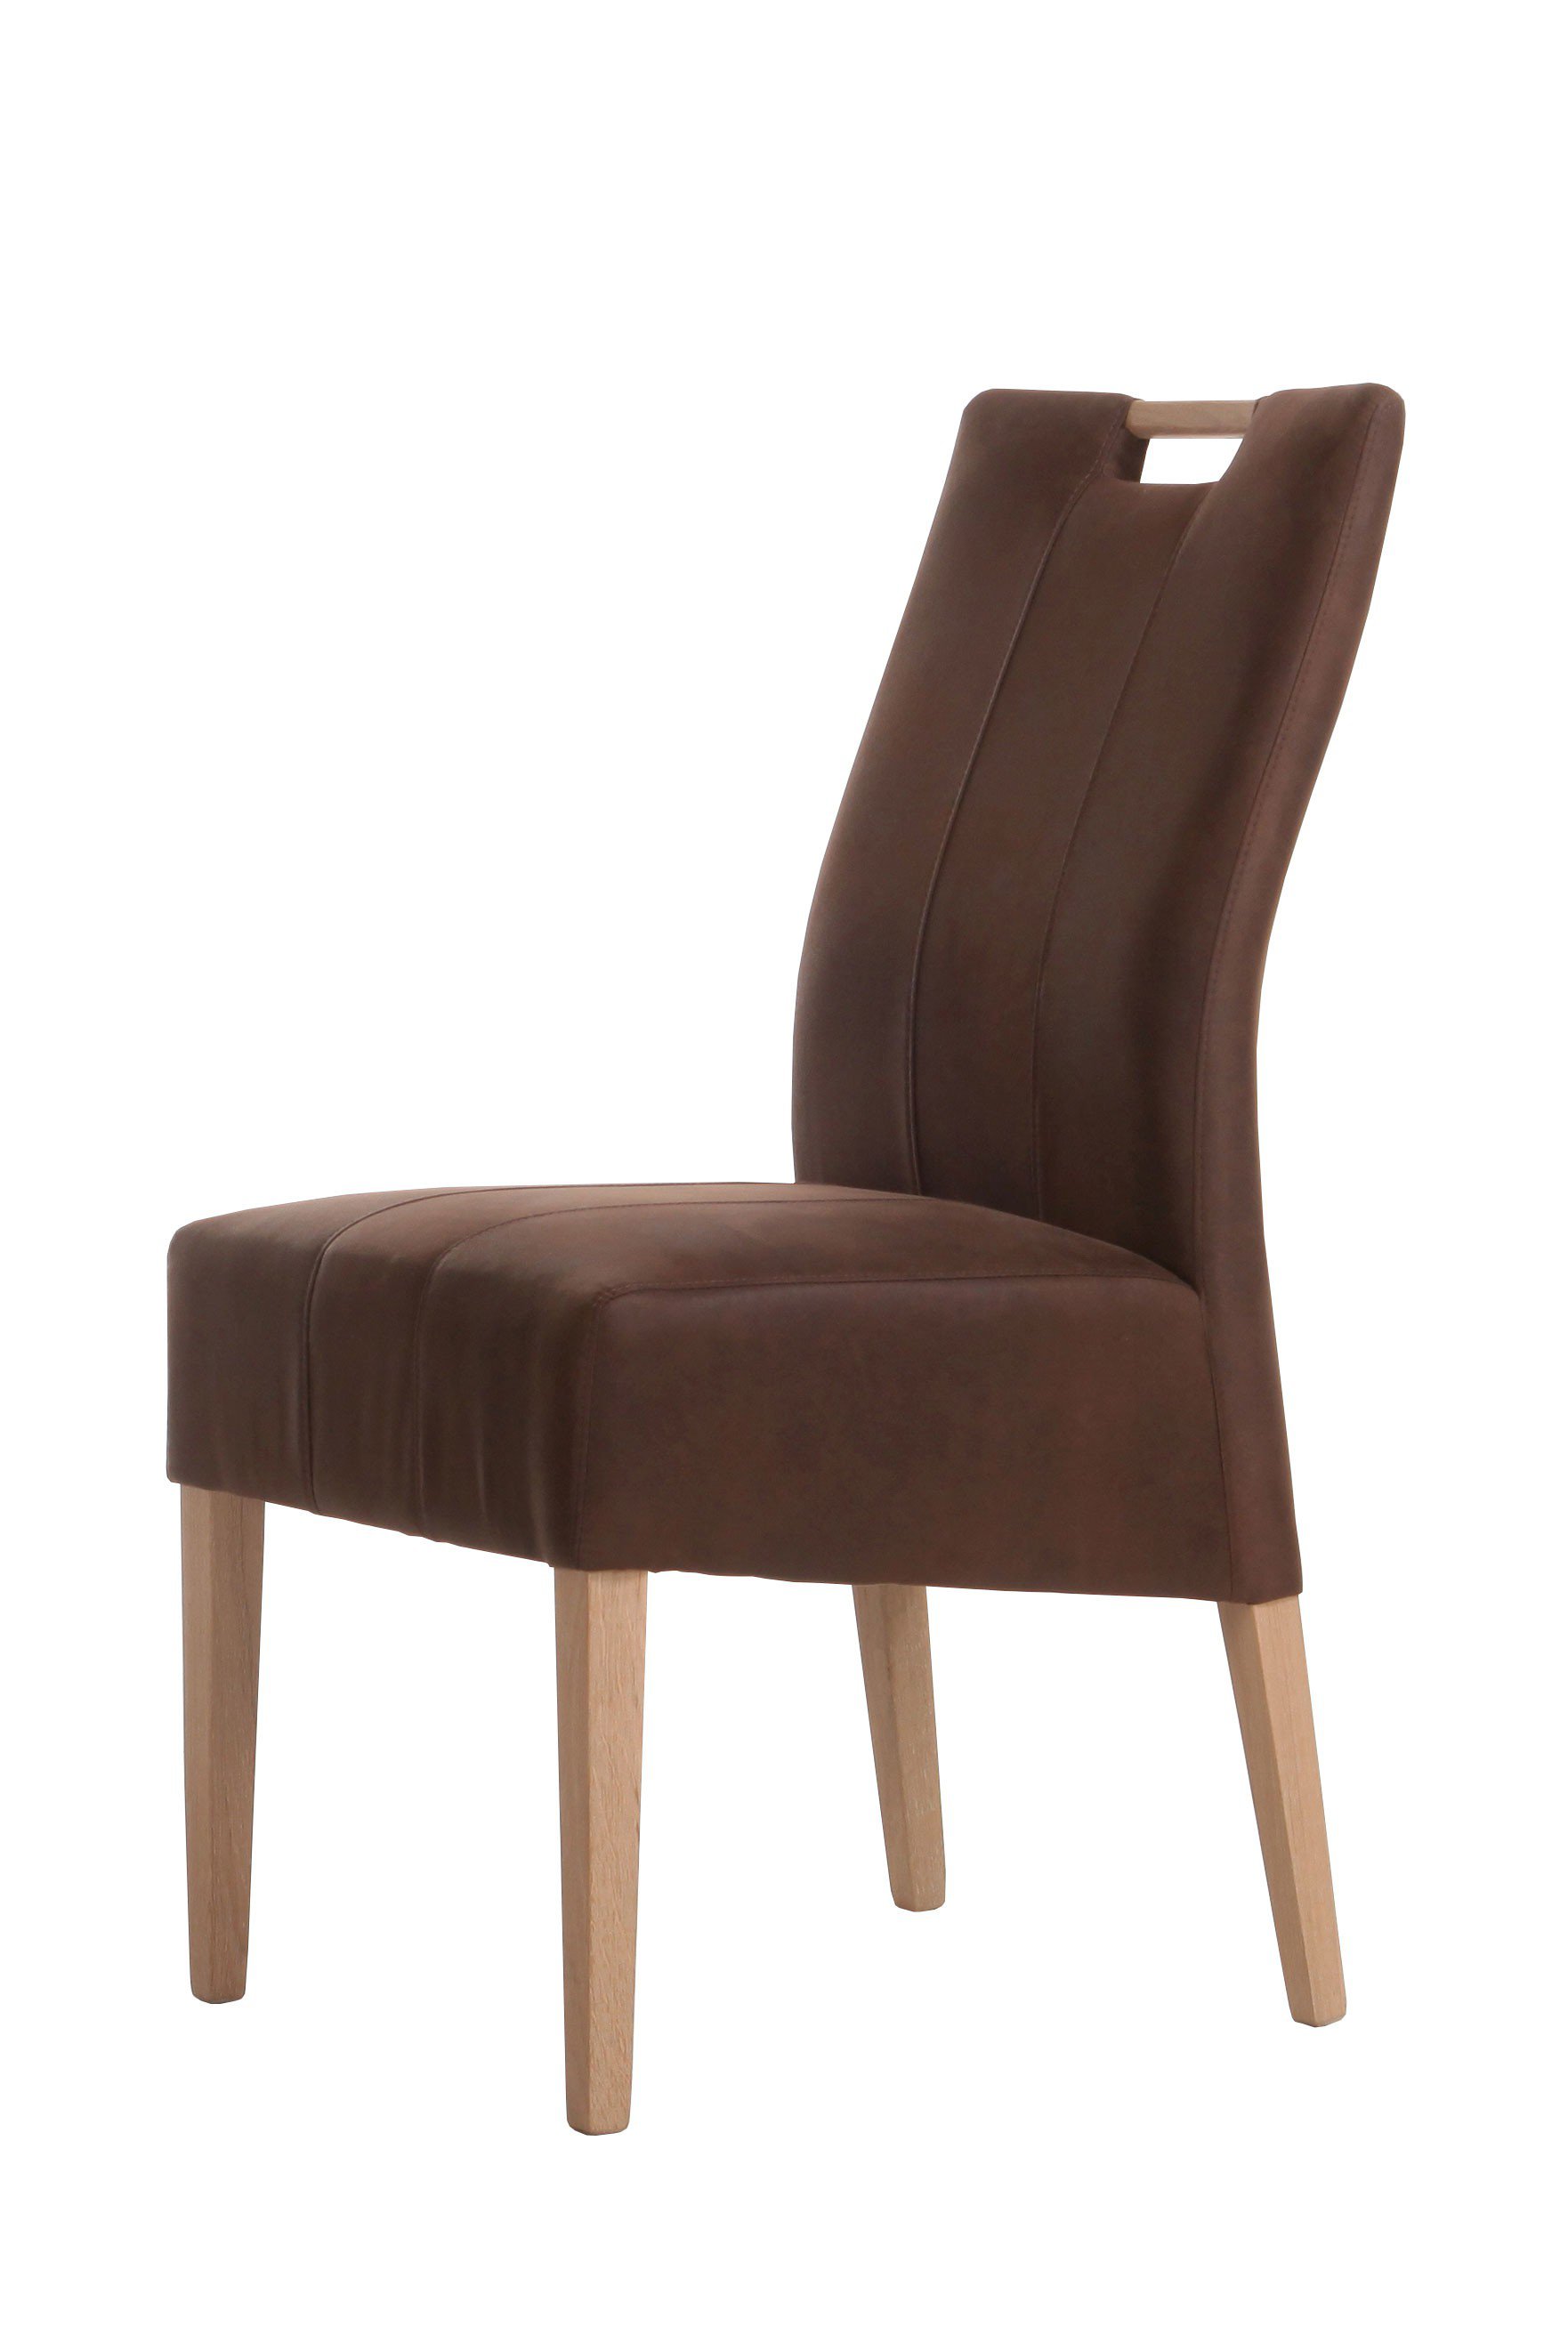 Standard Furniture Stuhl Vigo in Letz natur Möbel Eiche Dunkelbraun/ Ihr | Online-Shop 